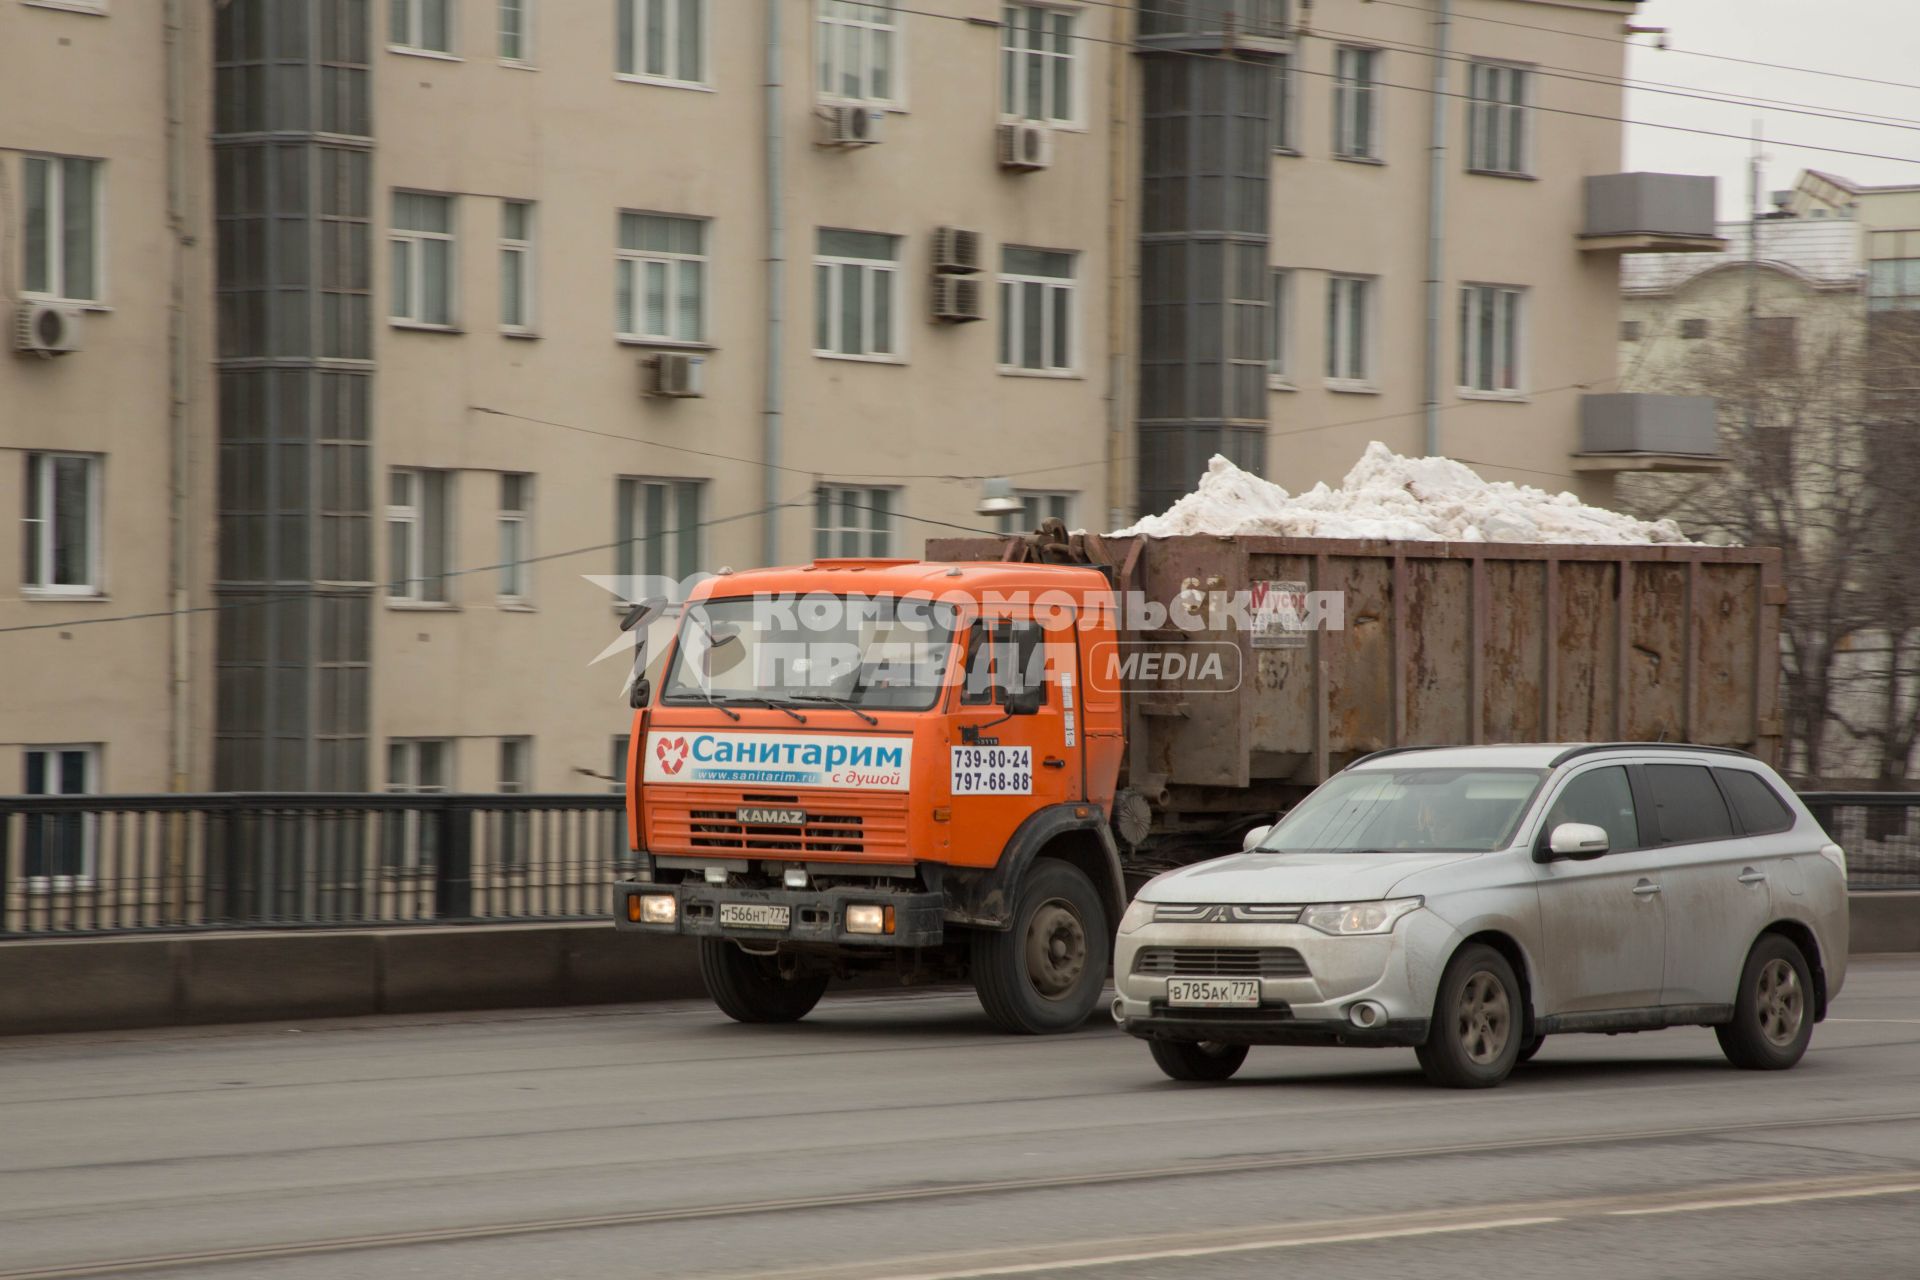 Москва.   Автомобили на одной из улиц города.